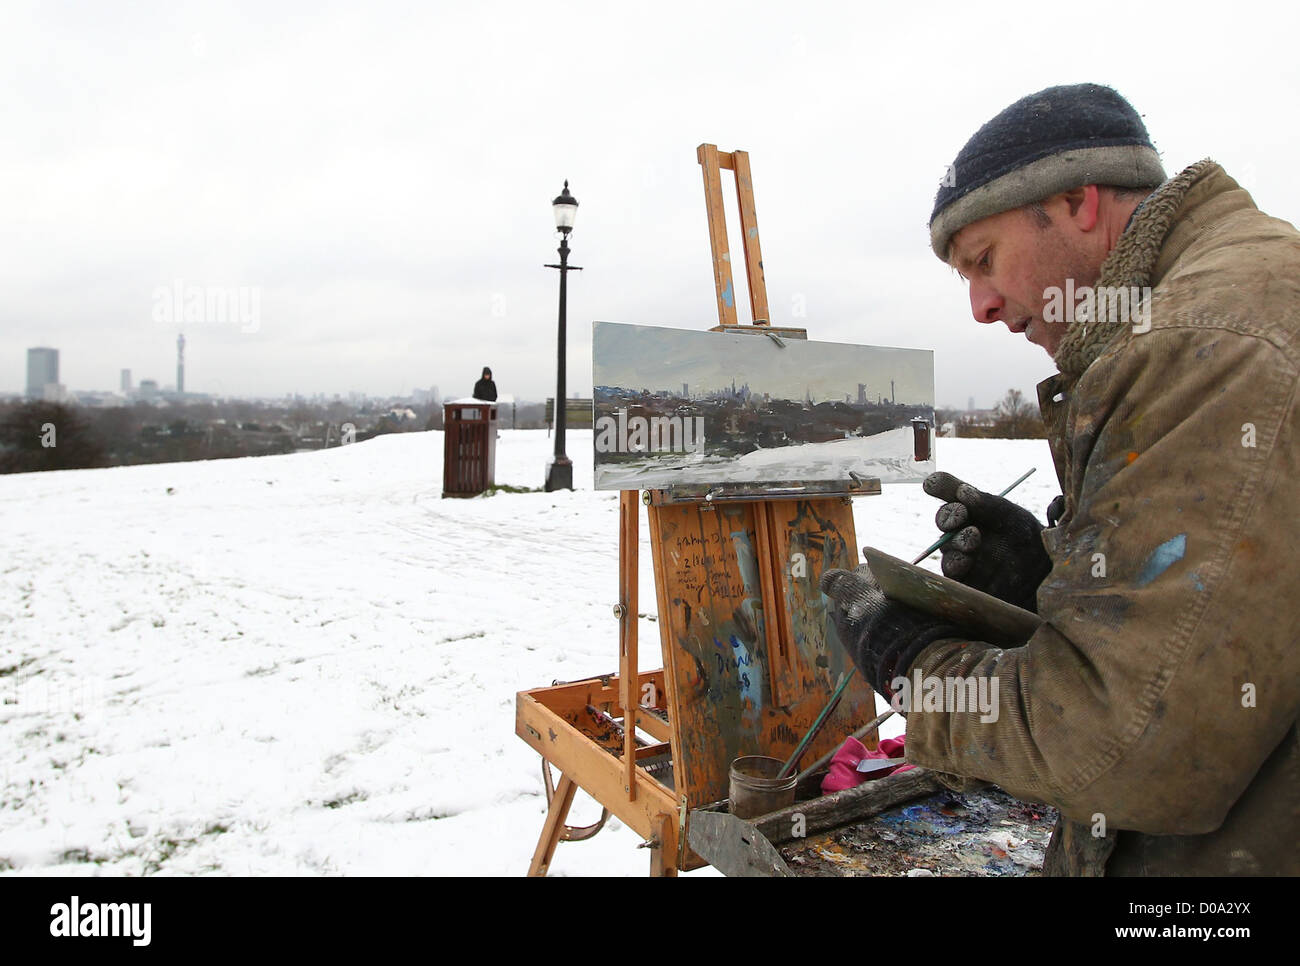 Britischer Impressionist Maler Peter Brown, bekannt als "Pete the Street" - eines lokalen Künstlers von Primrose Hill, malt eine Schnee-Szene der Stockfoto